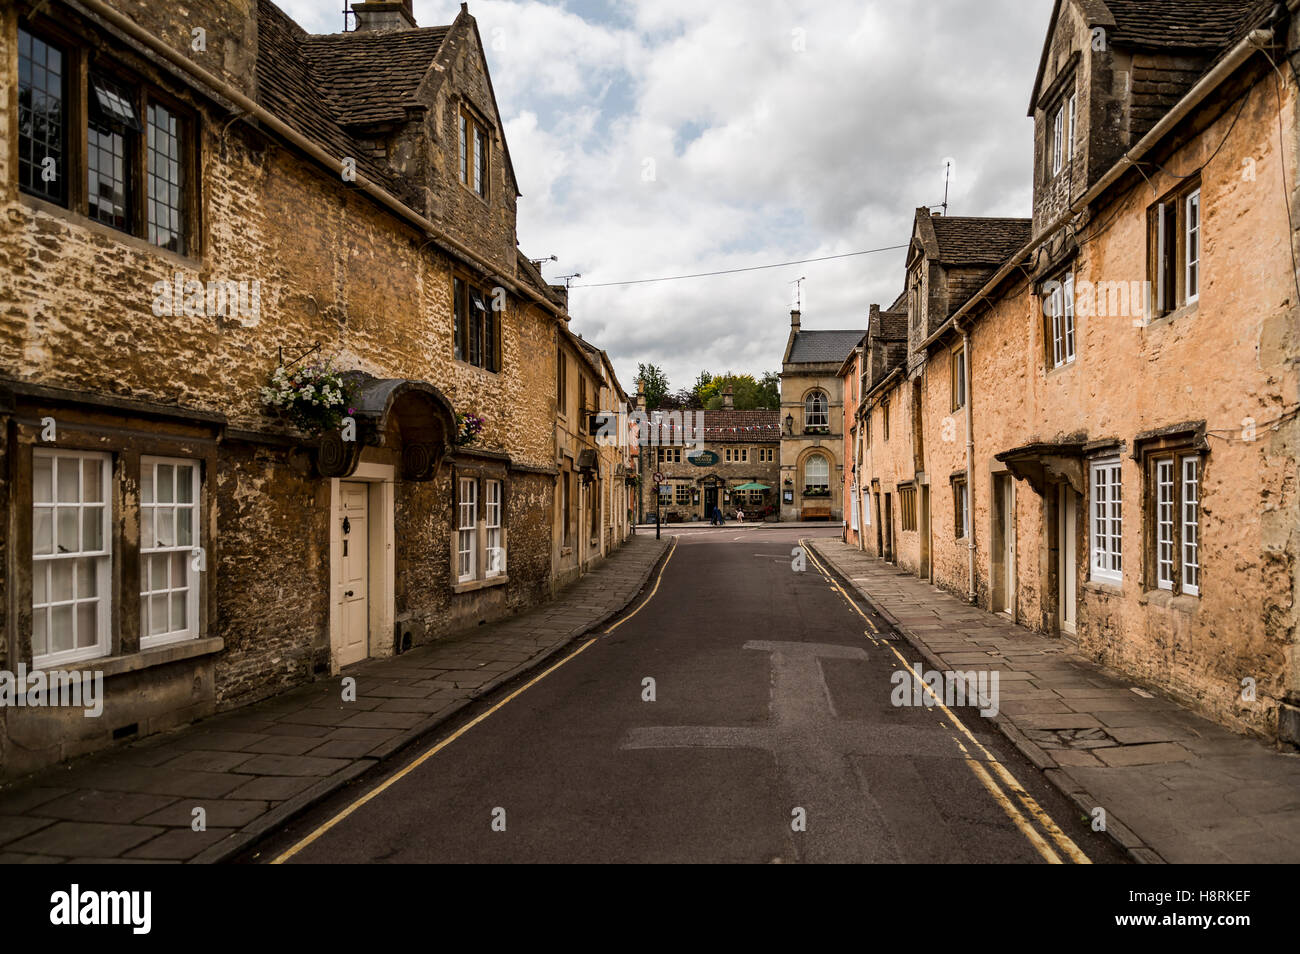 Street nella città mercato di Corsham Regno Unito, che è stato anche utilizzato per le riprese della BBC dramma Poldark. Foto Stock